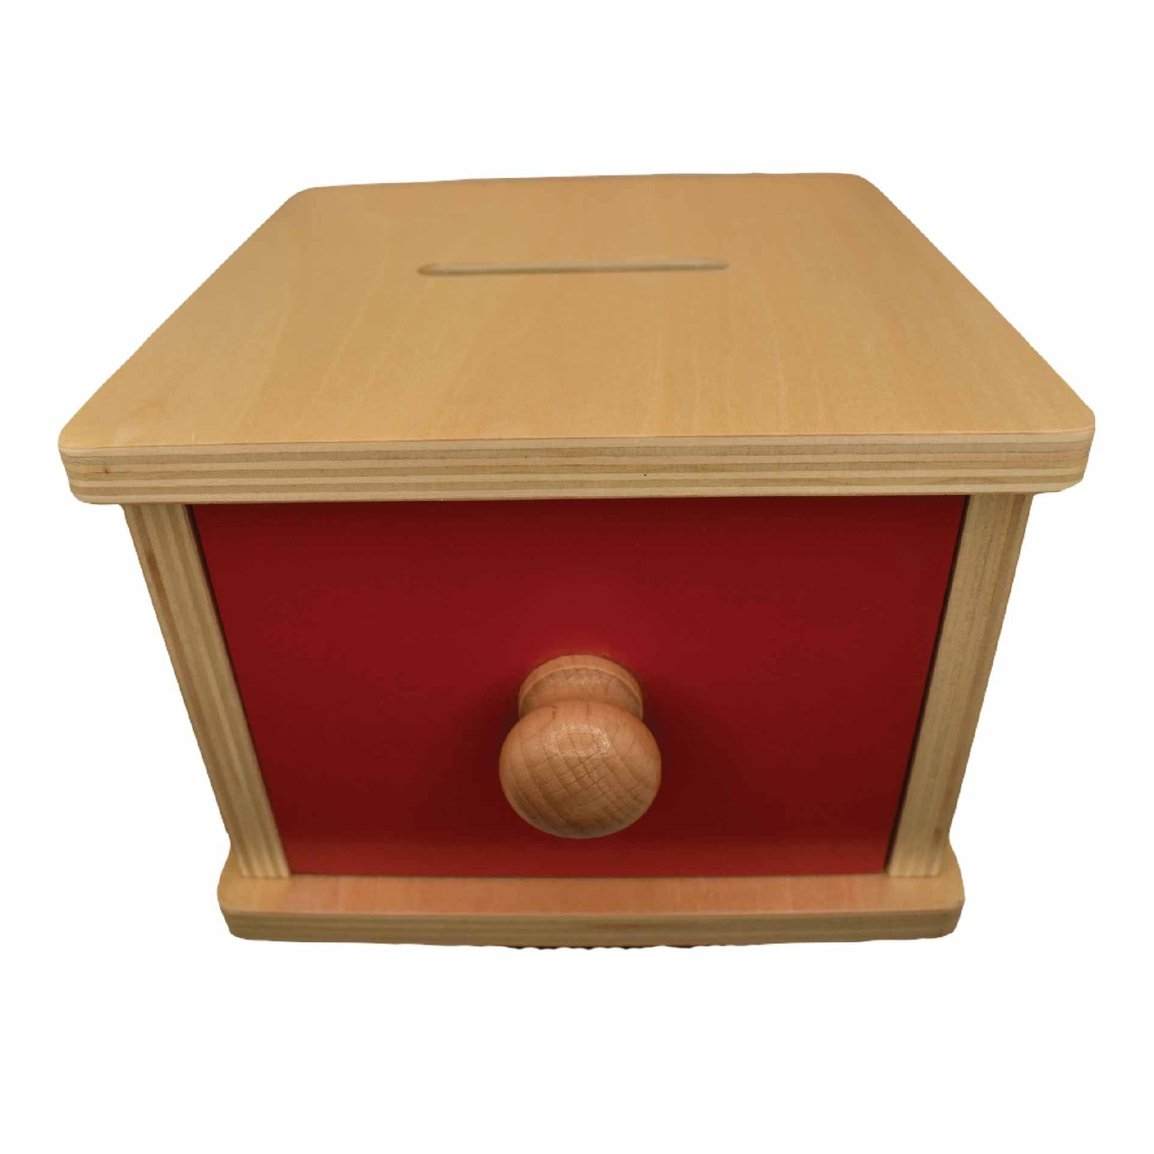 Object Permanence Montessori Coin Box Top view | Coin Box